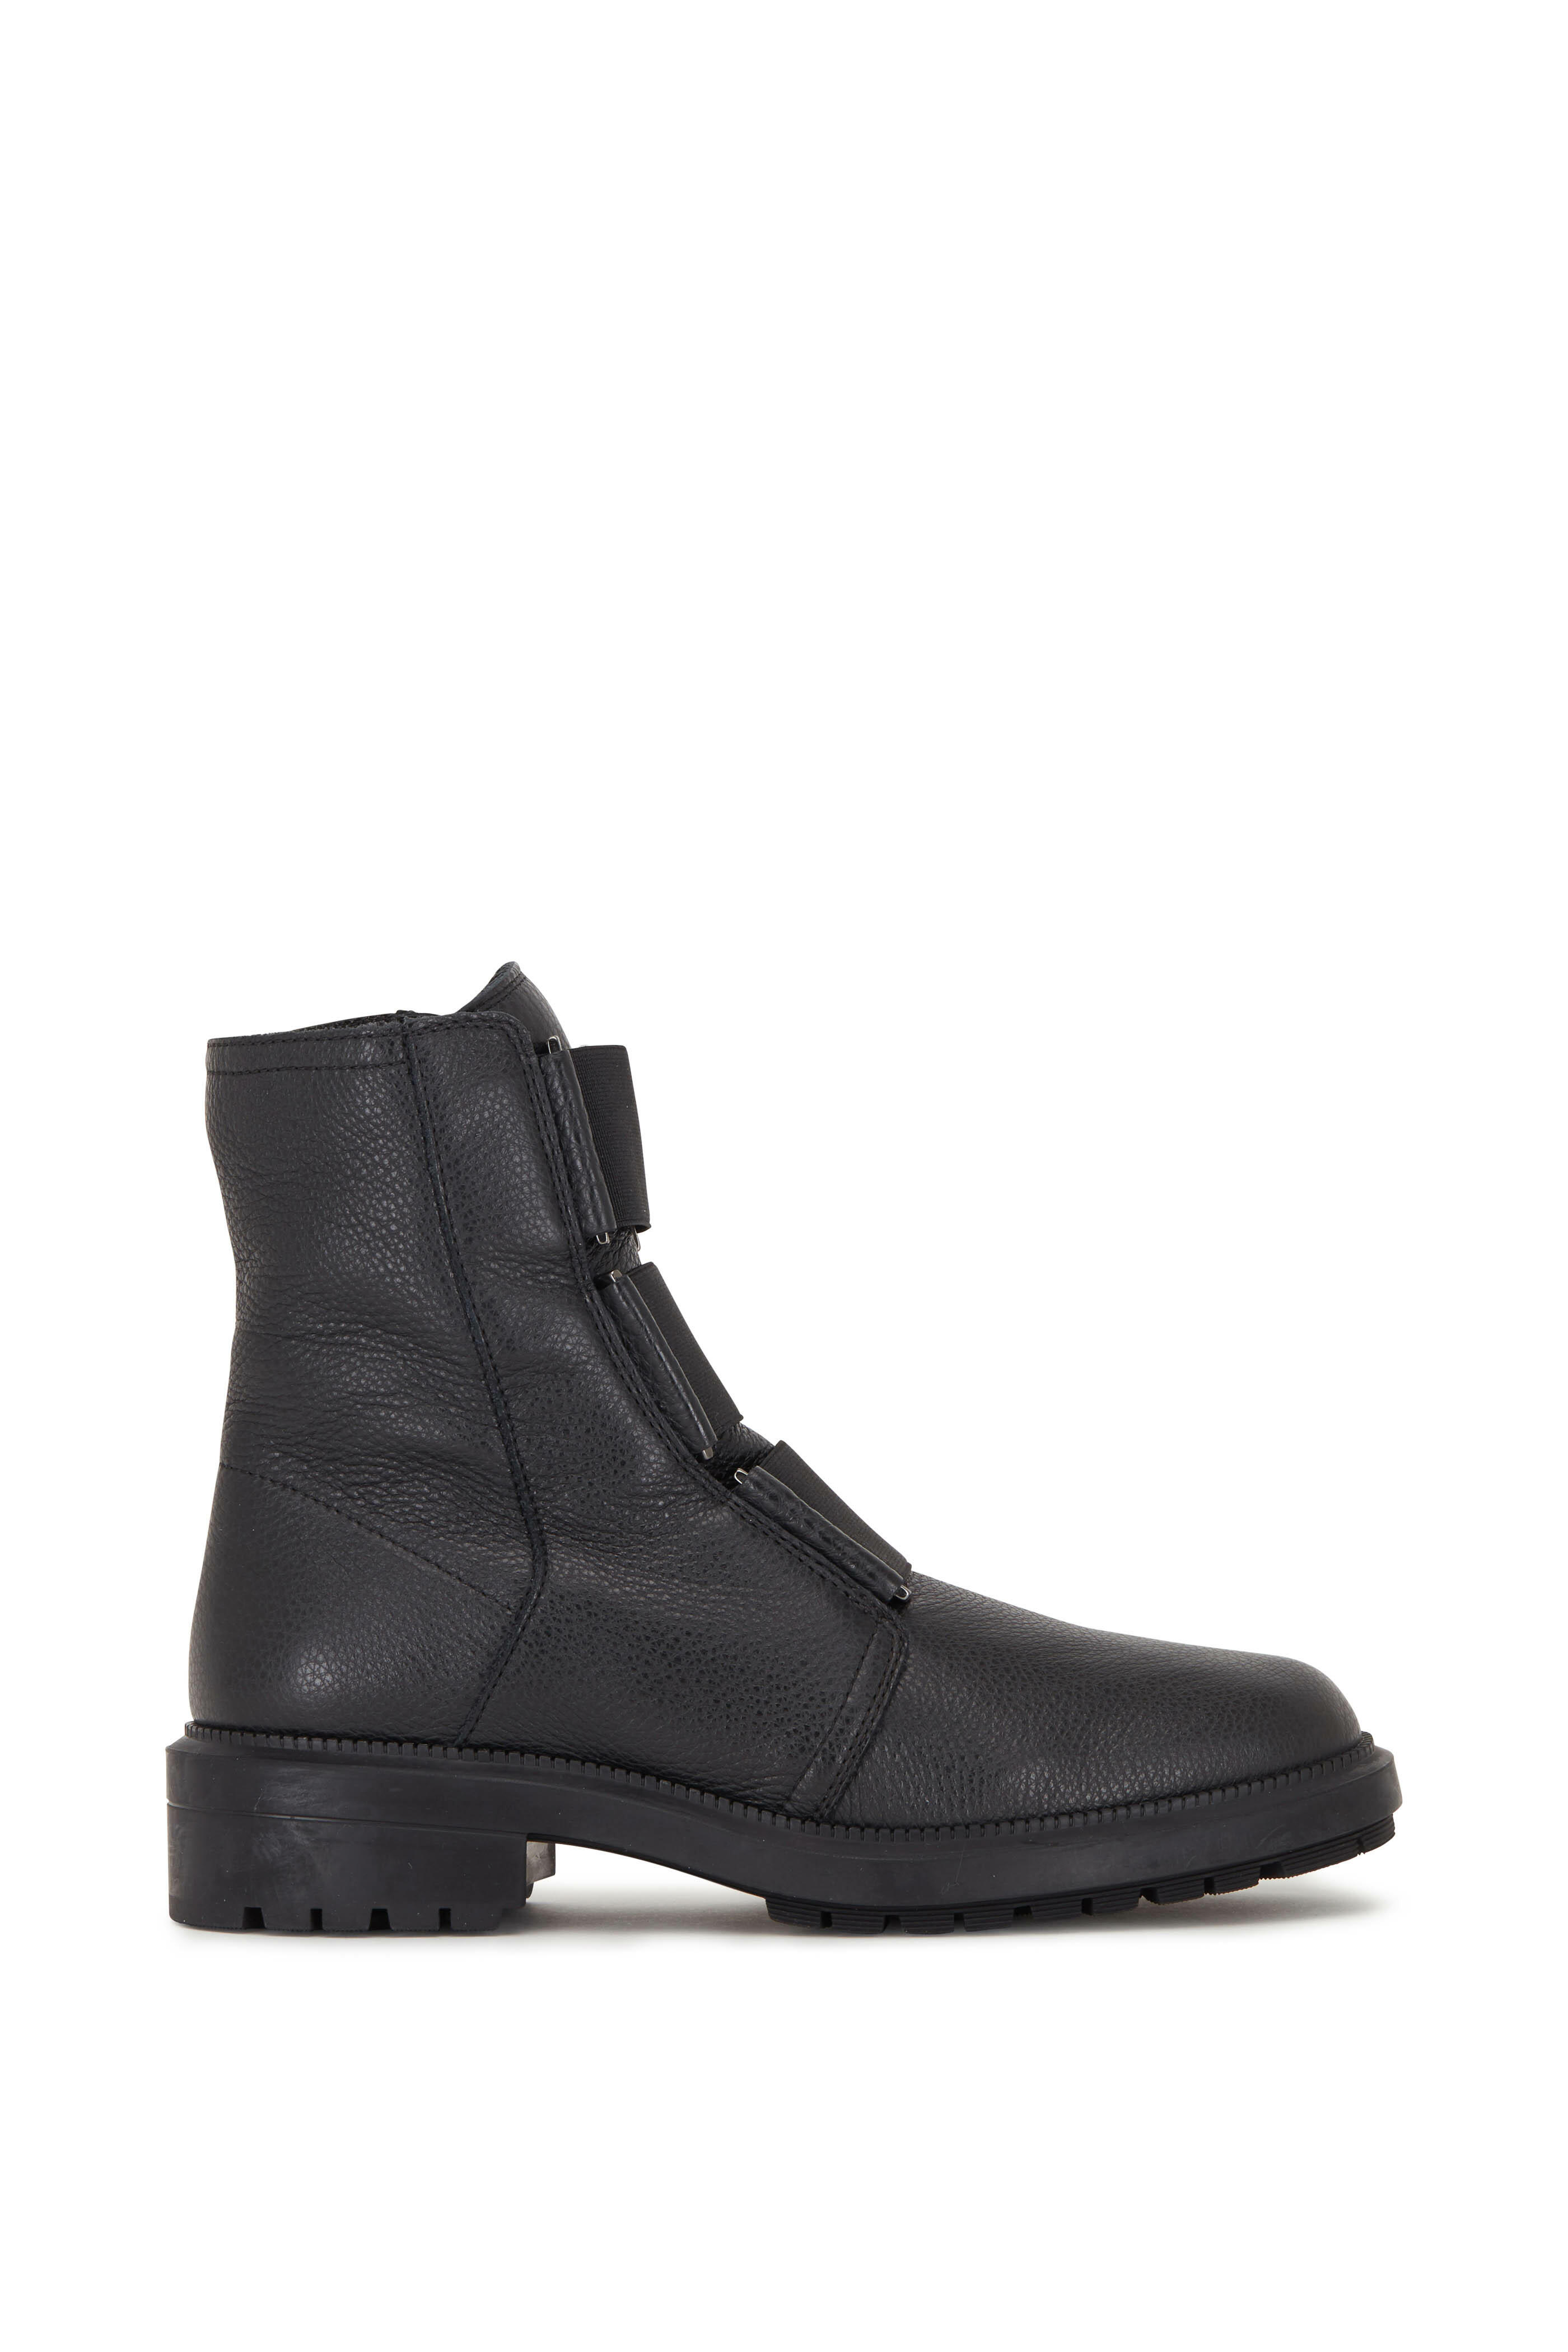 Aquatalia - Liv Black Tumbled Leather Elasticized Ankle Boot